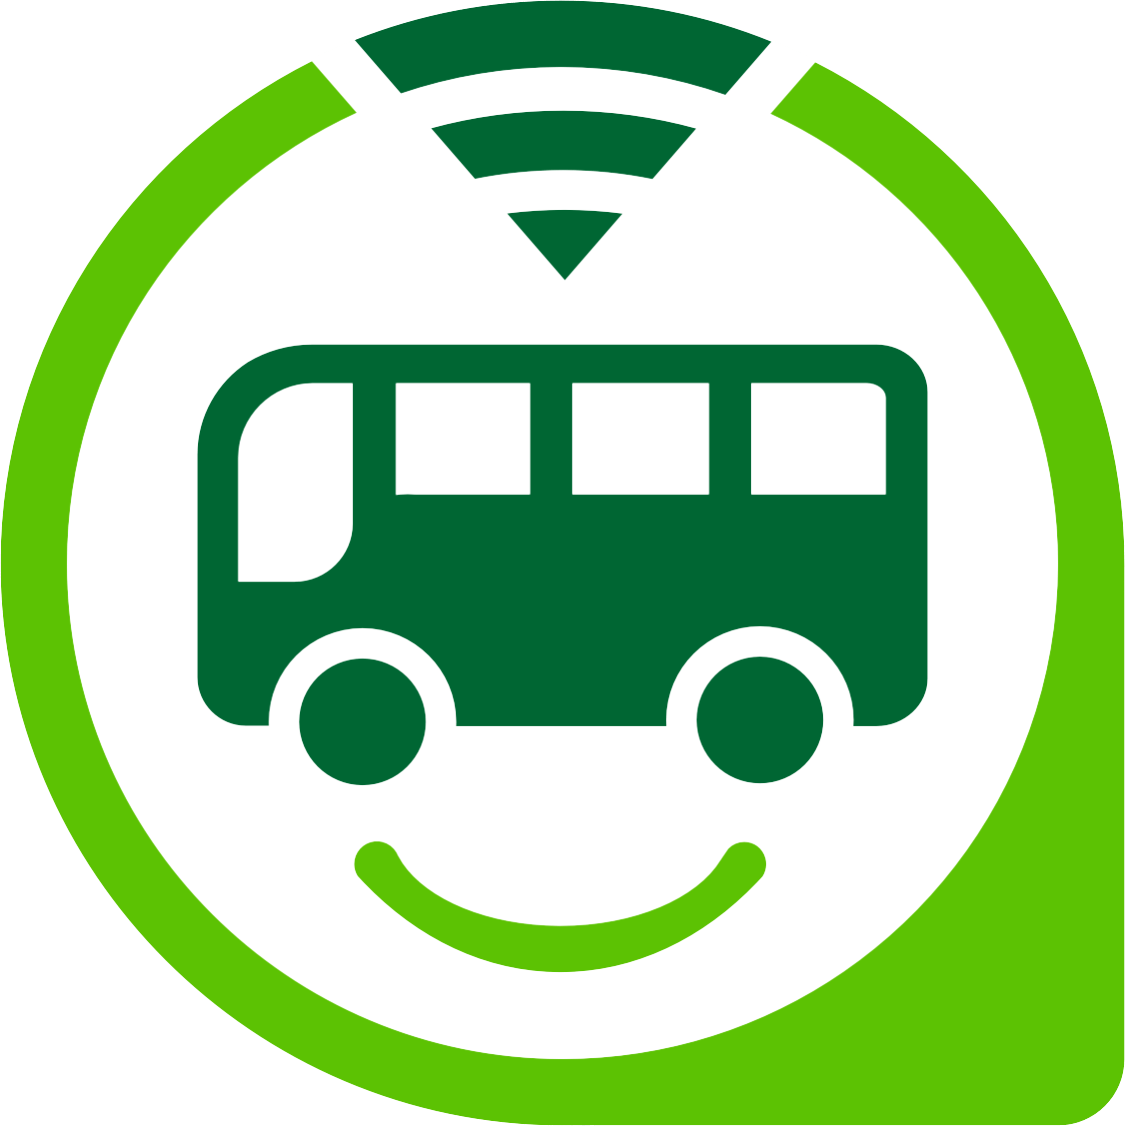 Bus Logo - Resultado de imagem para bus app logo | Logos | Bus app, App logo, Logos